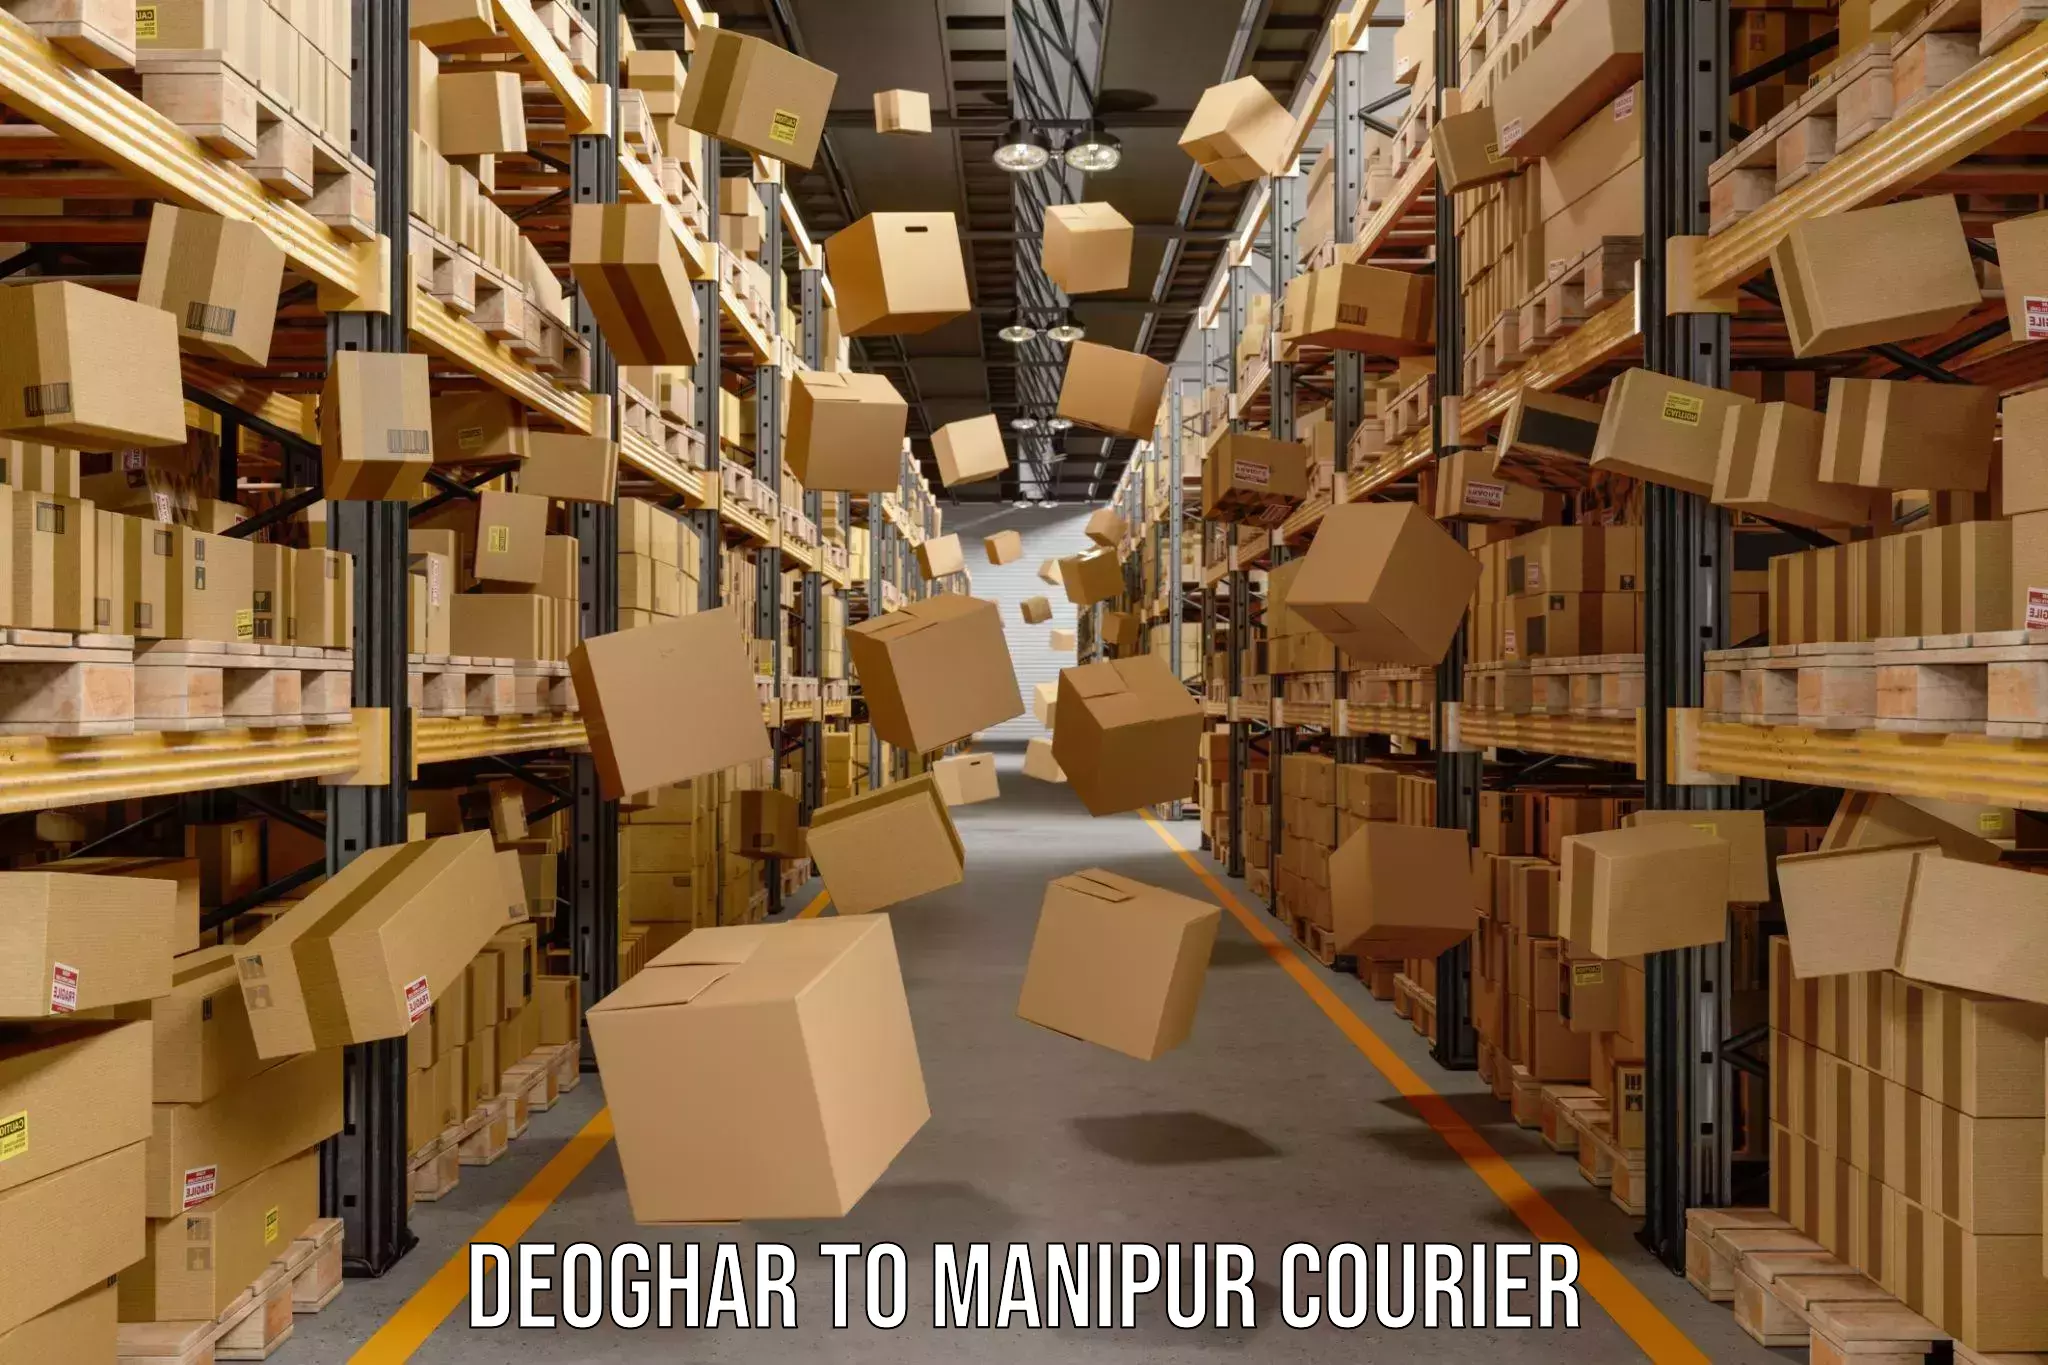 Cargo delivery service Deoghar to Senapati